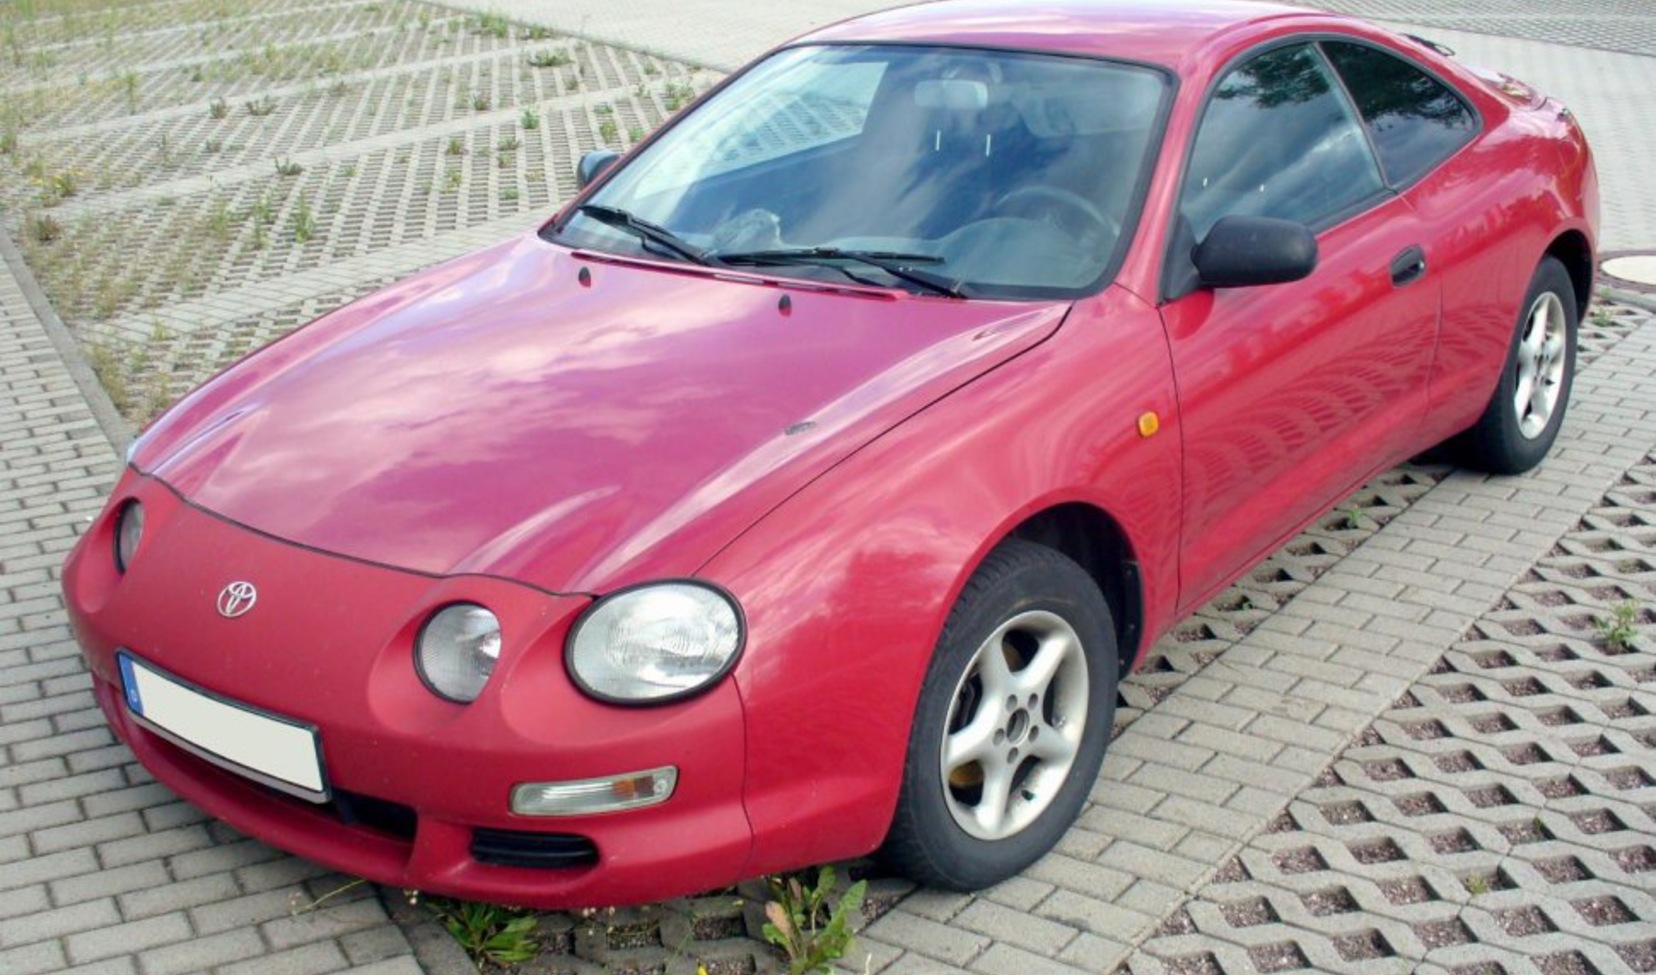 Toyota Celica (T20) 2.0 16V (170 Hp) 1996, 1997, 1998, 1999 